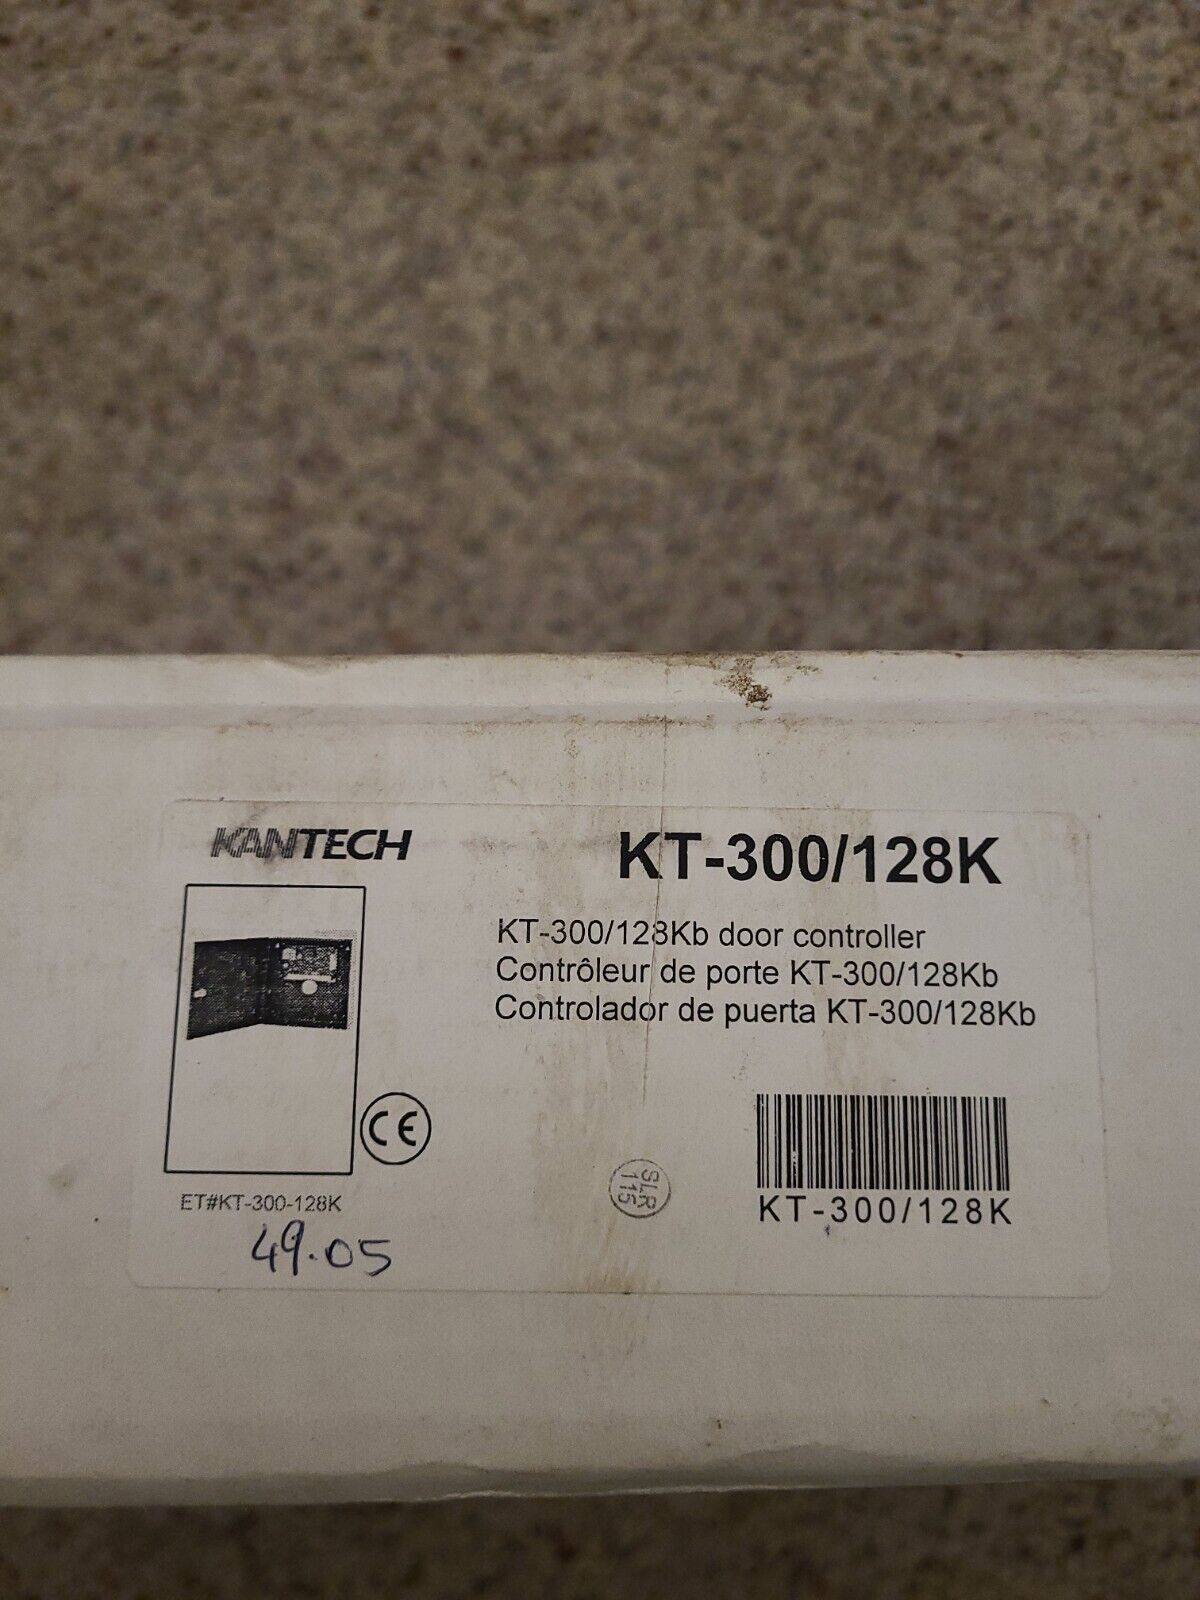 KANTECH KT-300/128K Door Controller KT-300 two-door controller, 128KB ...